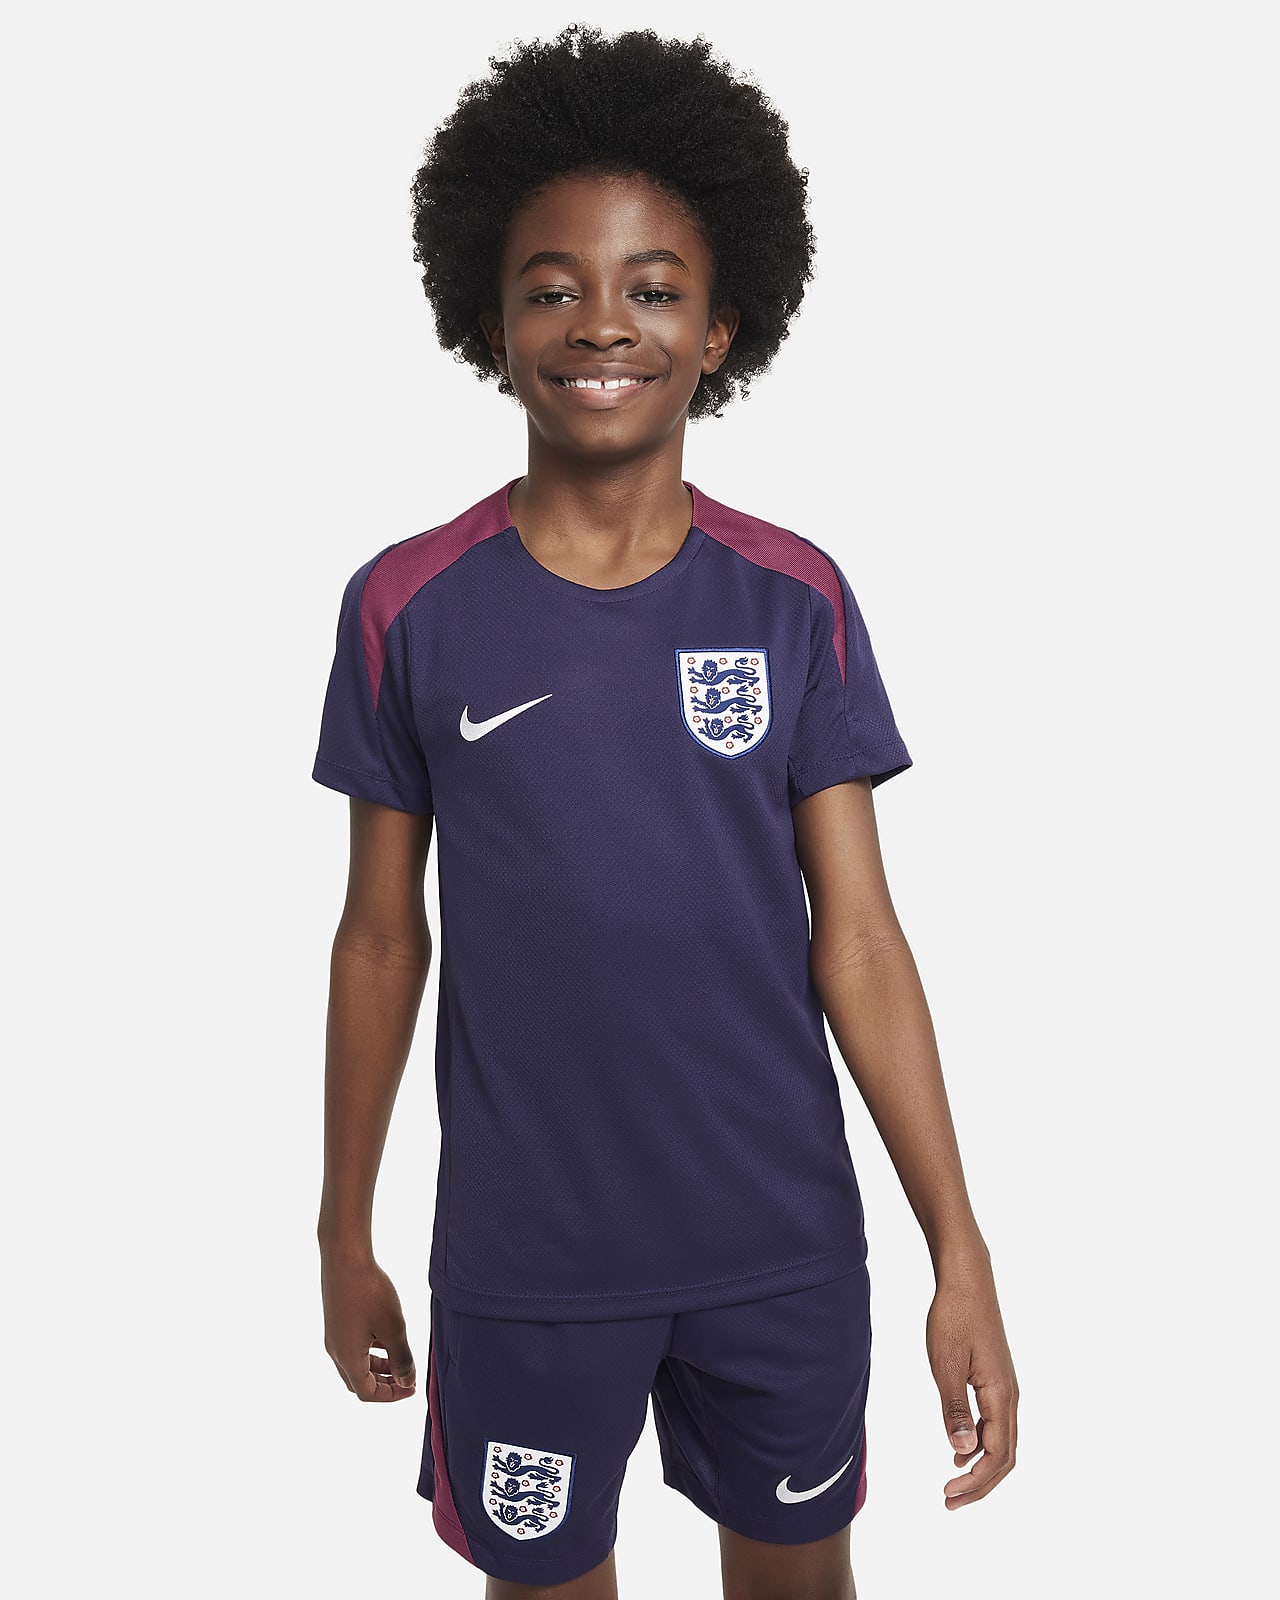 Anglia Strike Nike Dri-FIT rövid ujjú, kötött futballfelső nagyobb gyerekeknek